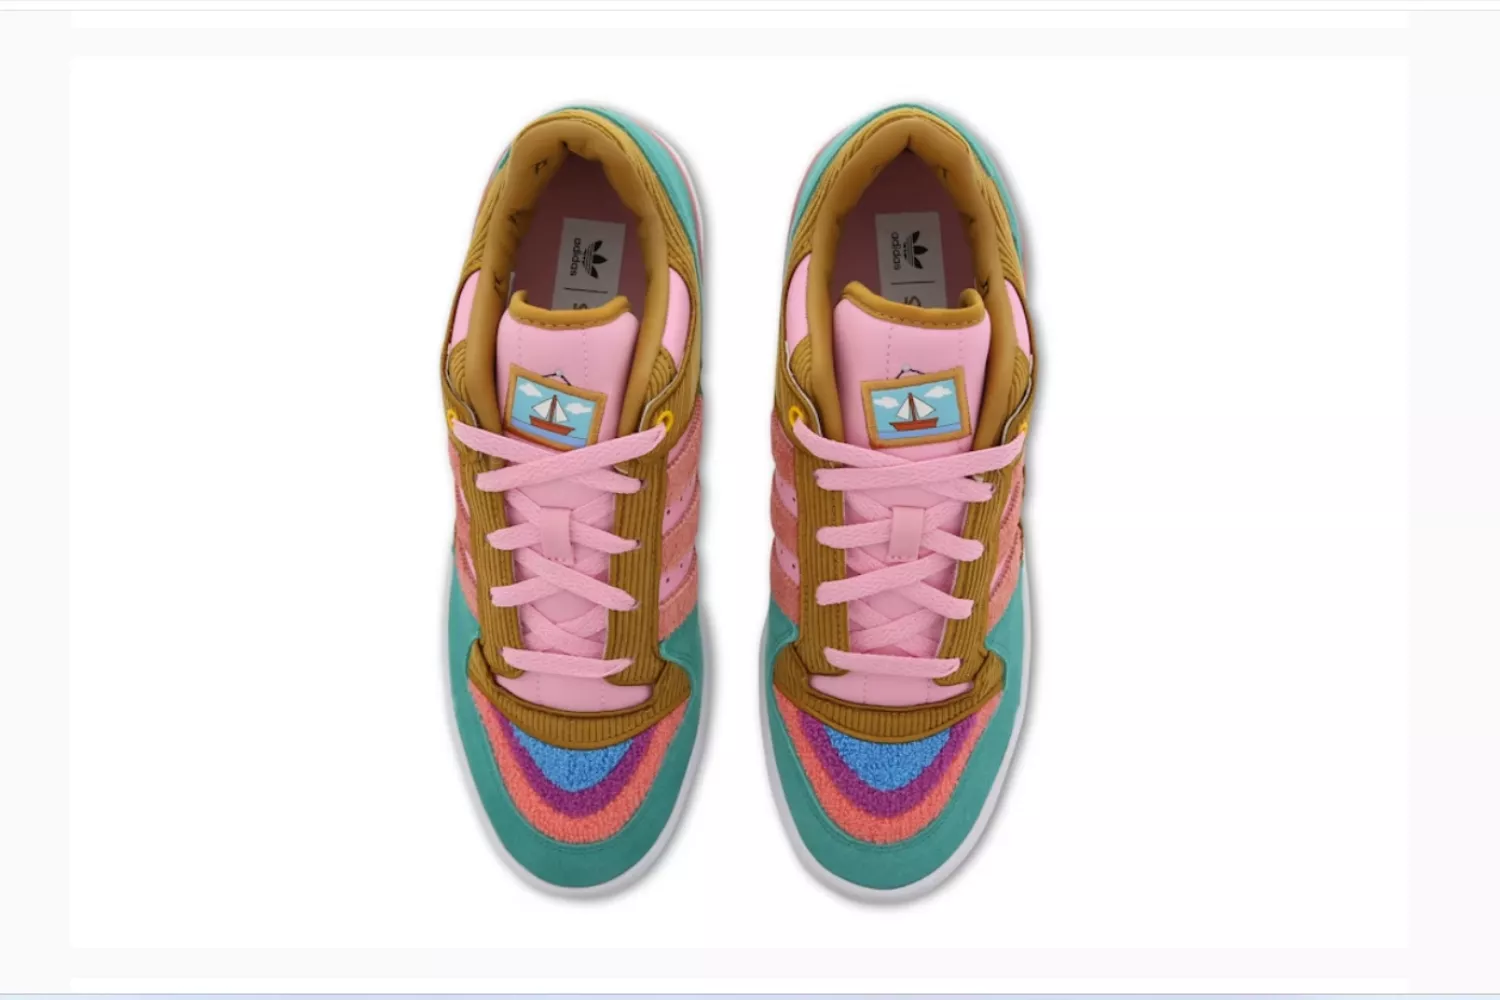  Zapatillas de Adidas de Los Simpson / FOOT LOCKER